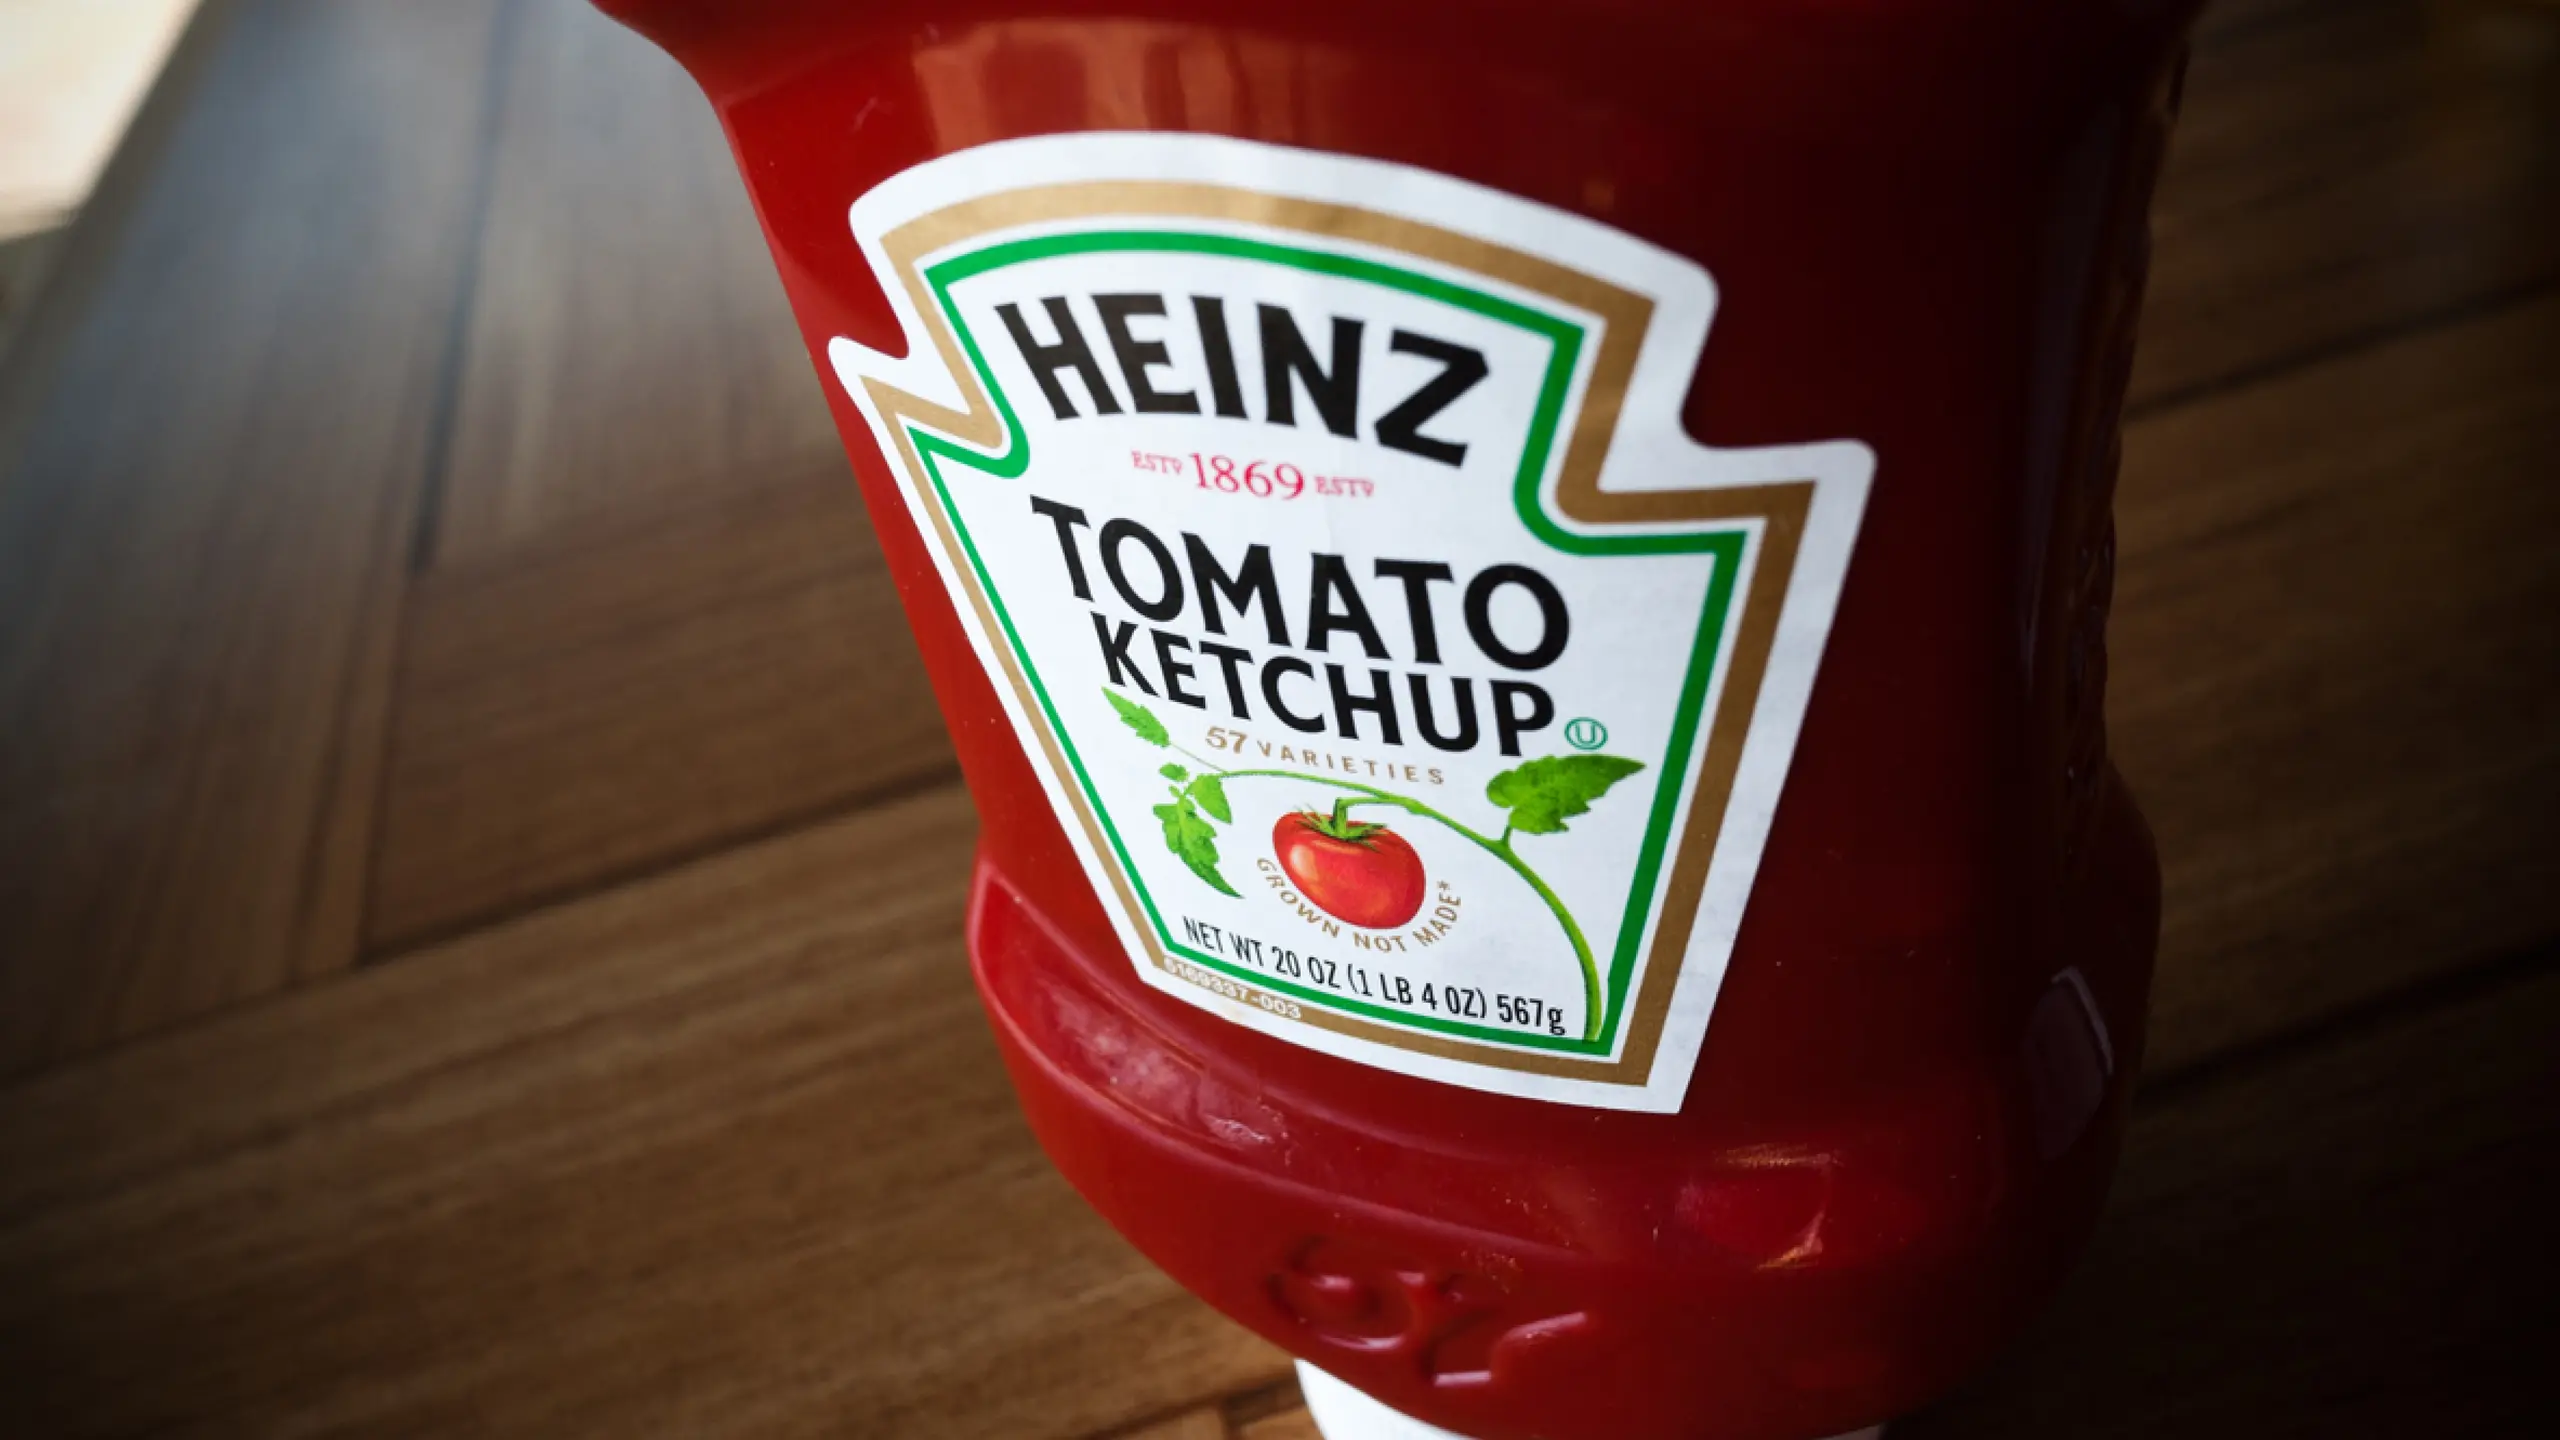 gruenstich-haar-entfernen-ketchup